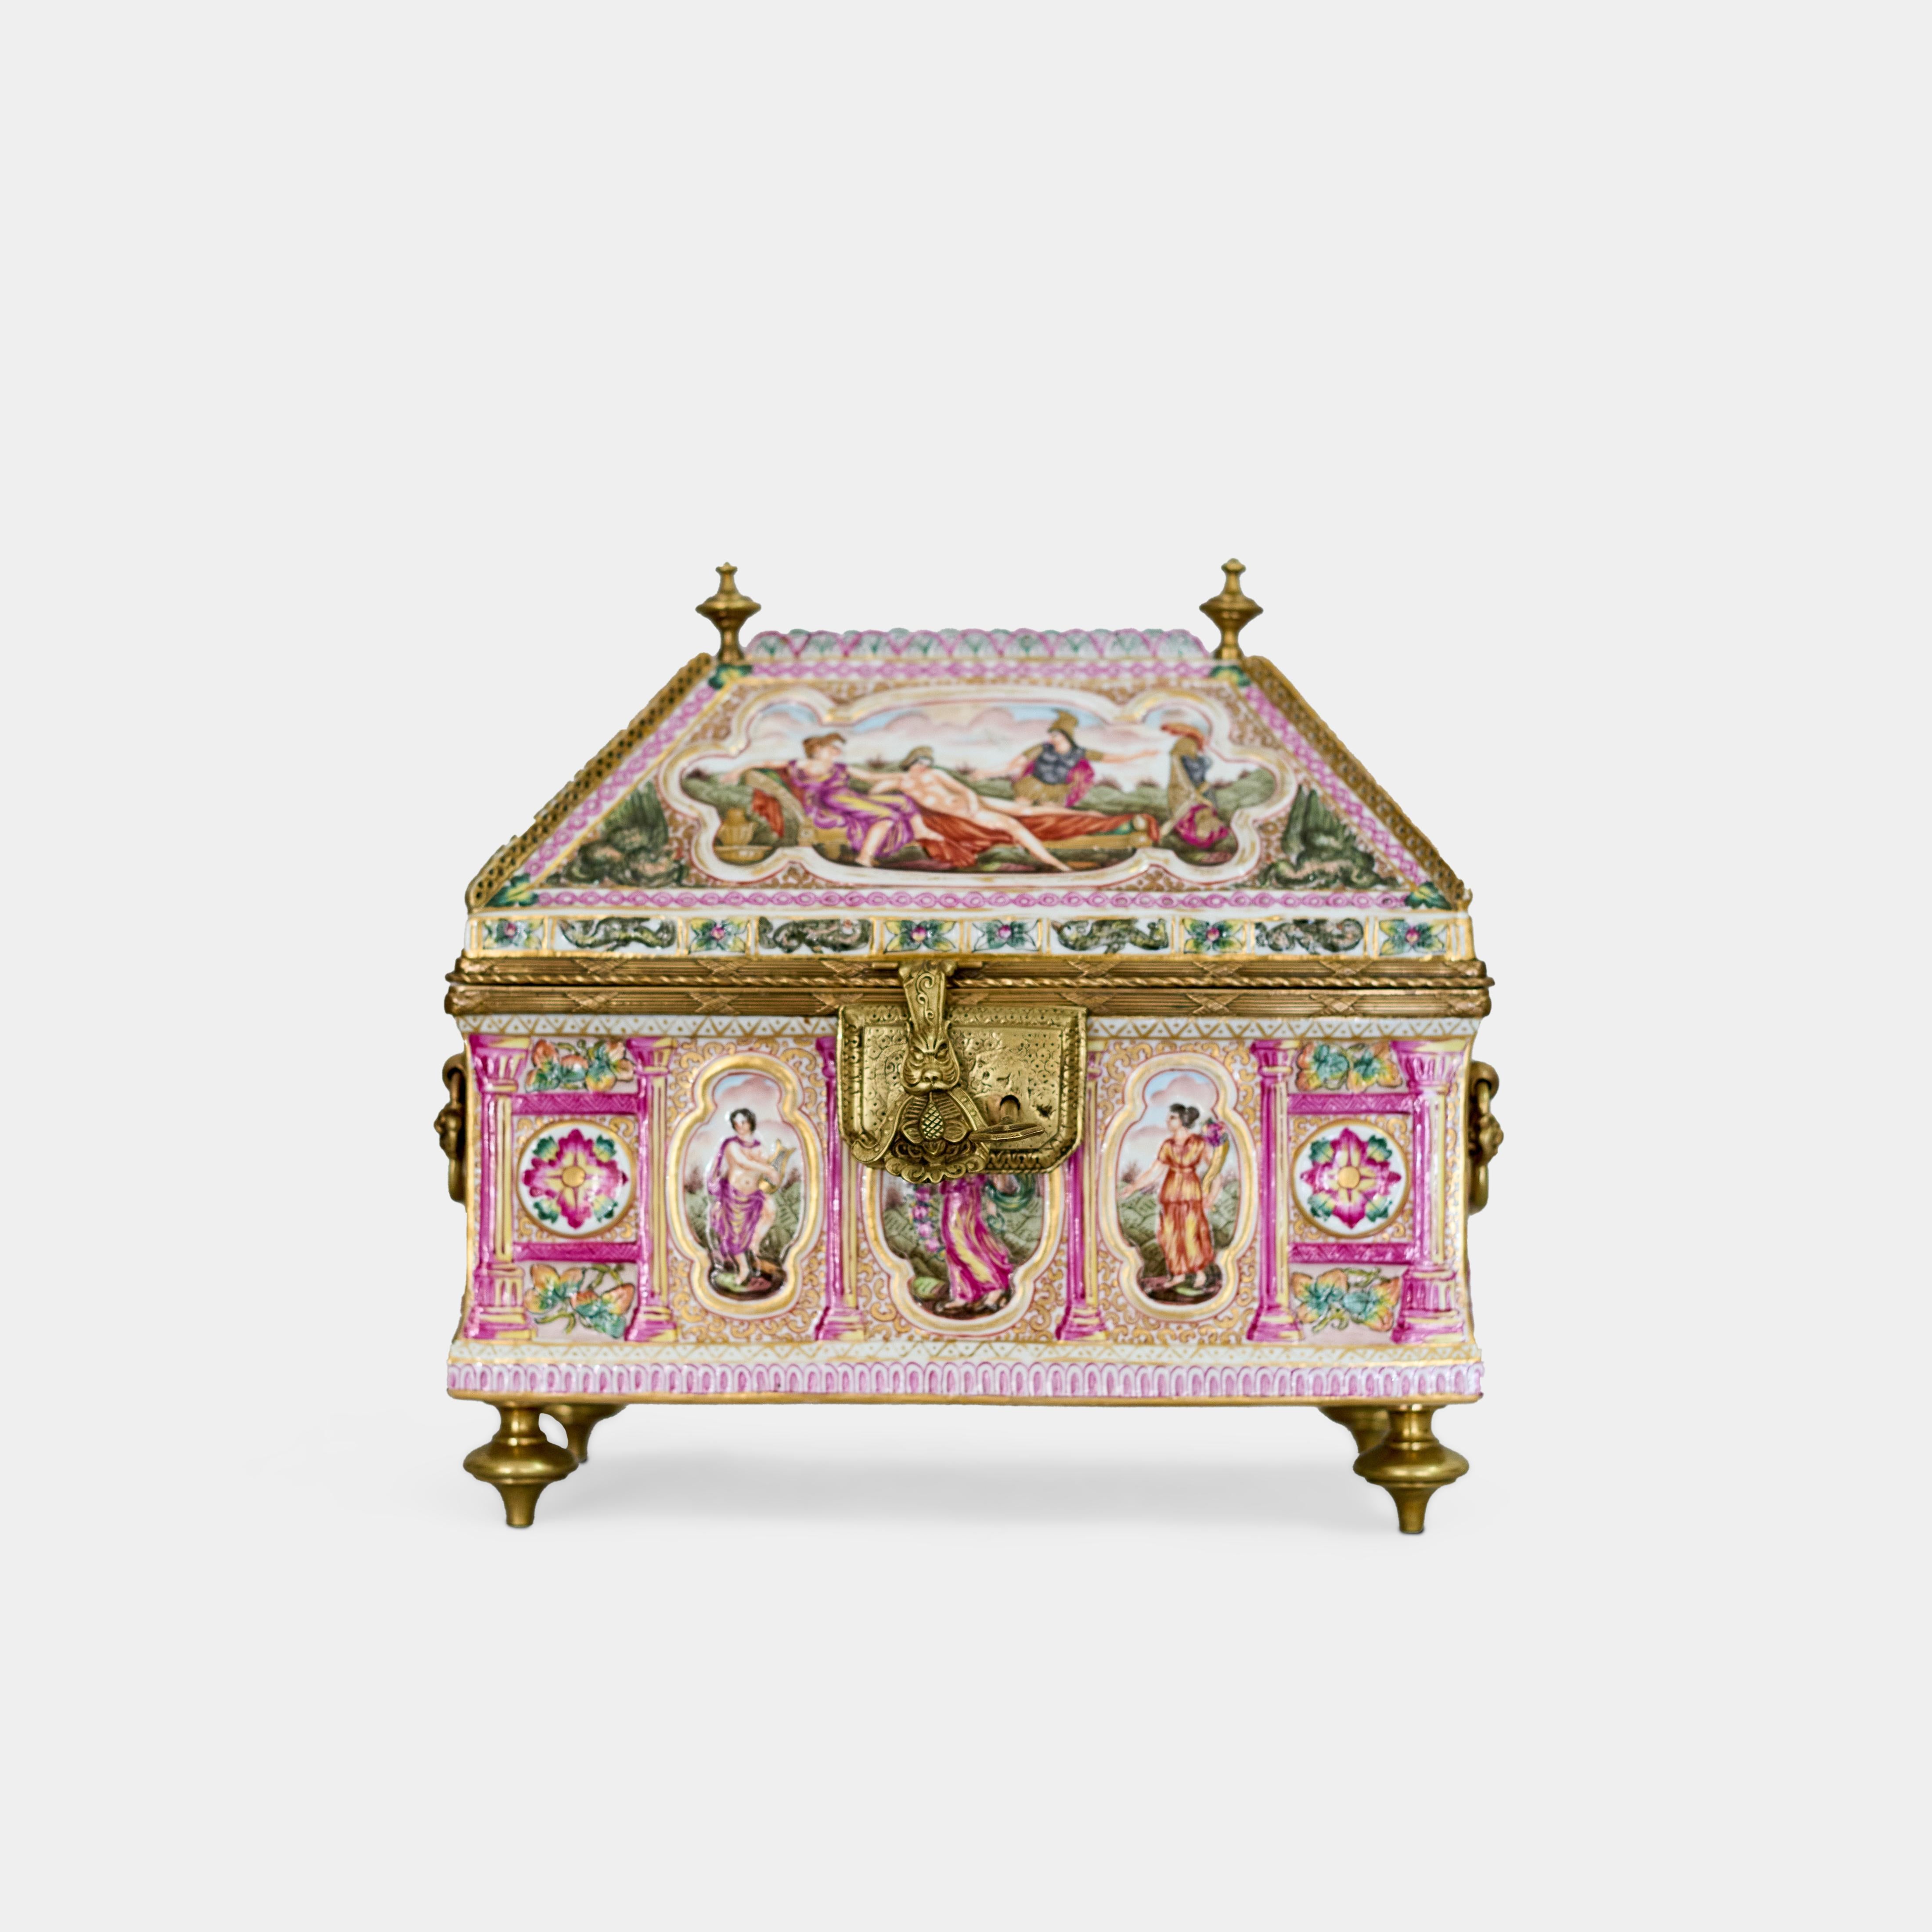 Cette grande boîte à charnière italienne antique de Capodimonte, datant d'Italie vers 1900, est un trésor orné de captivantes scènes romaines. Les détails complexes de cette boîte mettent probablement en valeur des motifs et des images classiques,